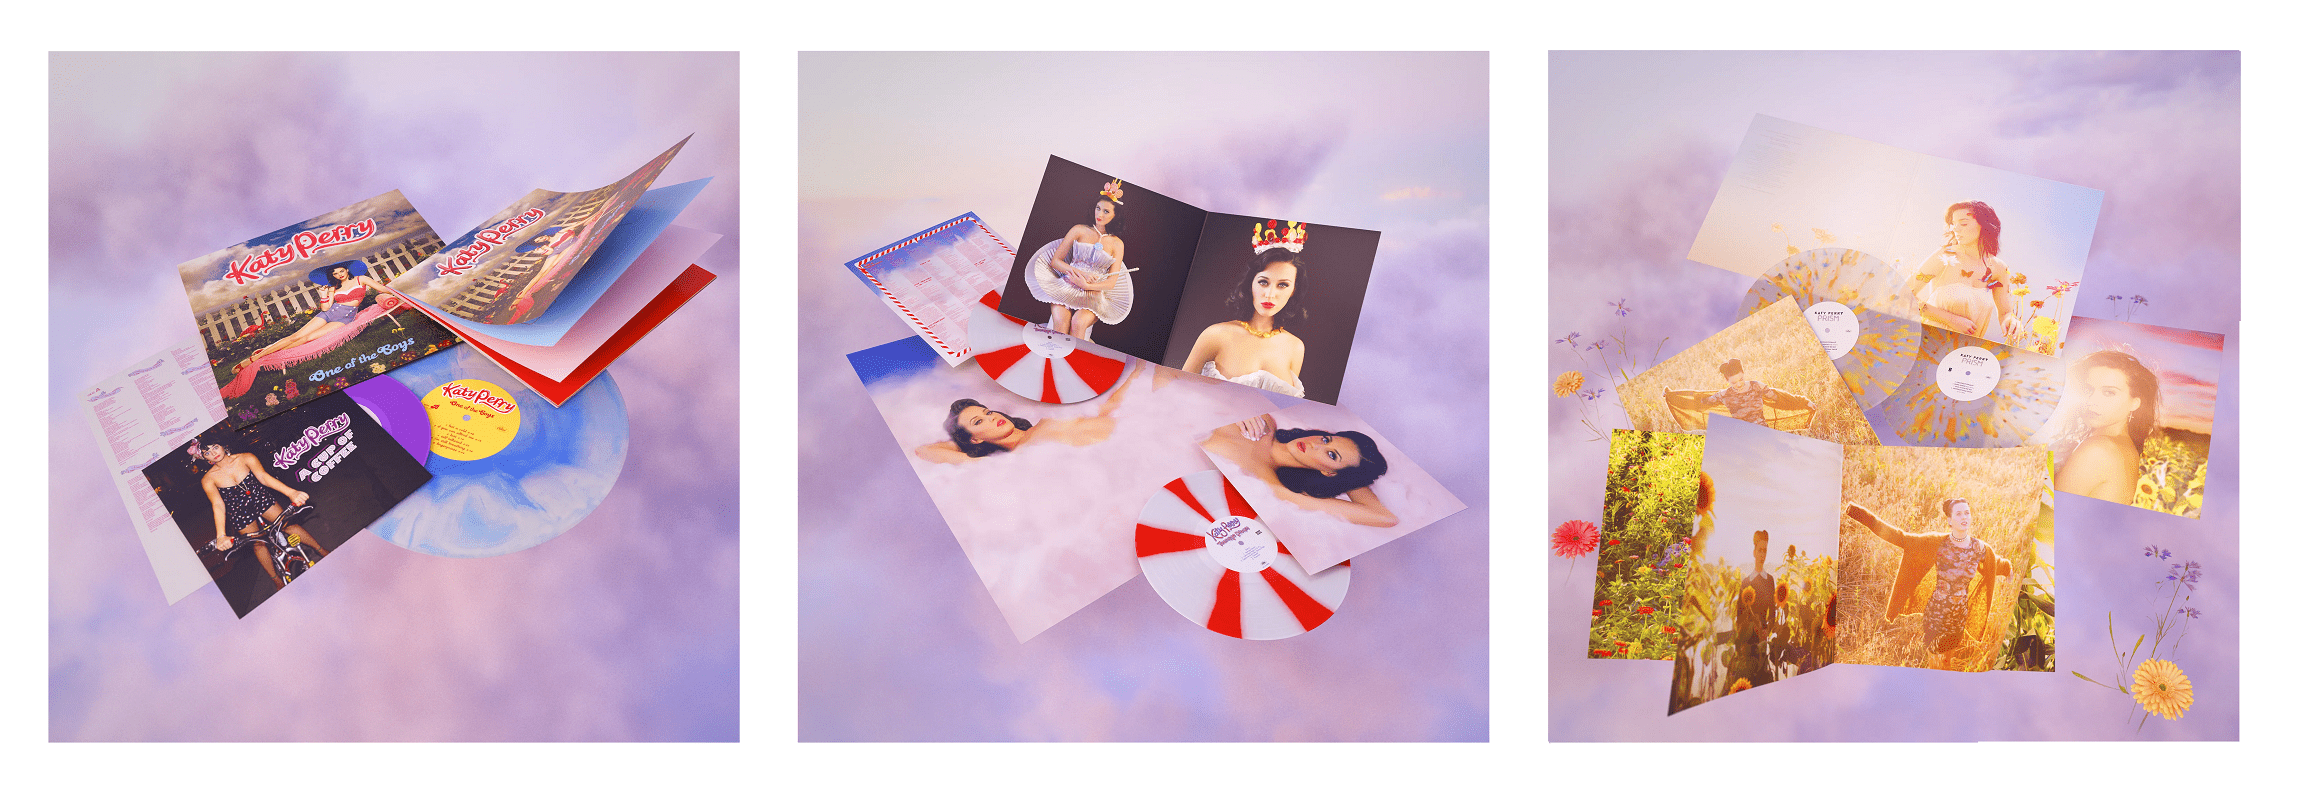 Katy Perry Vinyl Catalog Box Set